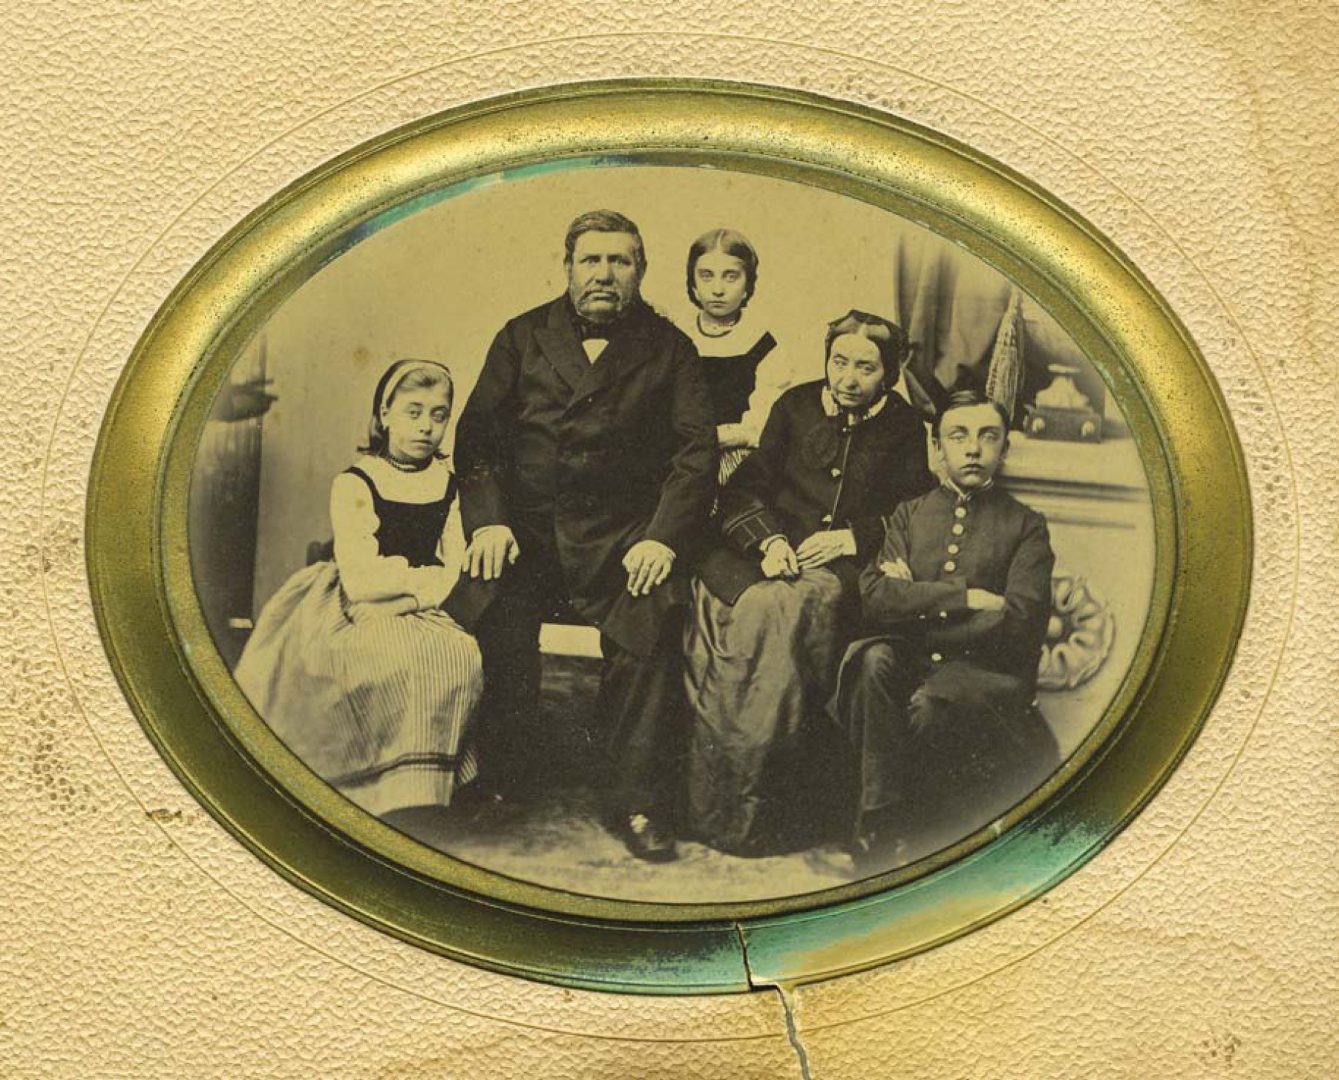 Owalna, czarno-biała fotografia, na której siedzi mężczyzna i kobieta oraz troje dzieci